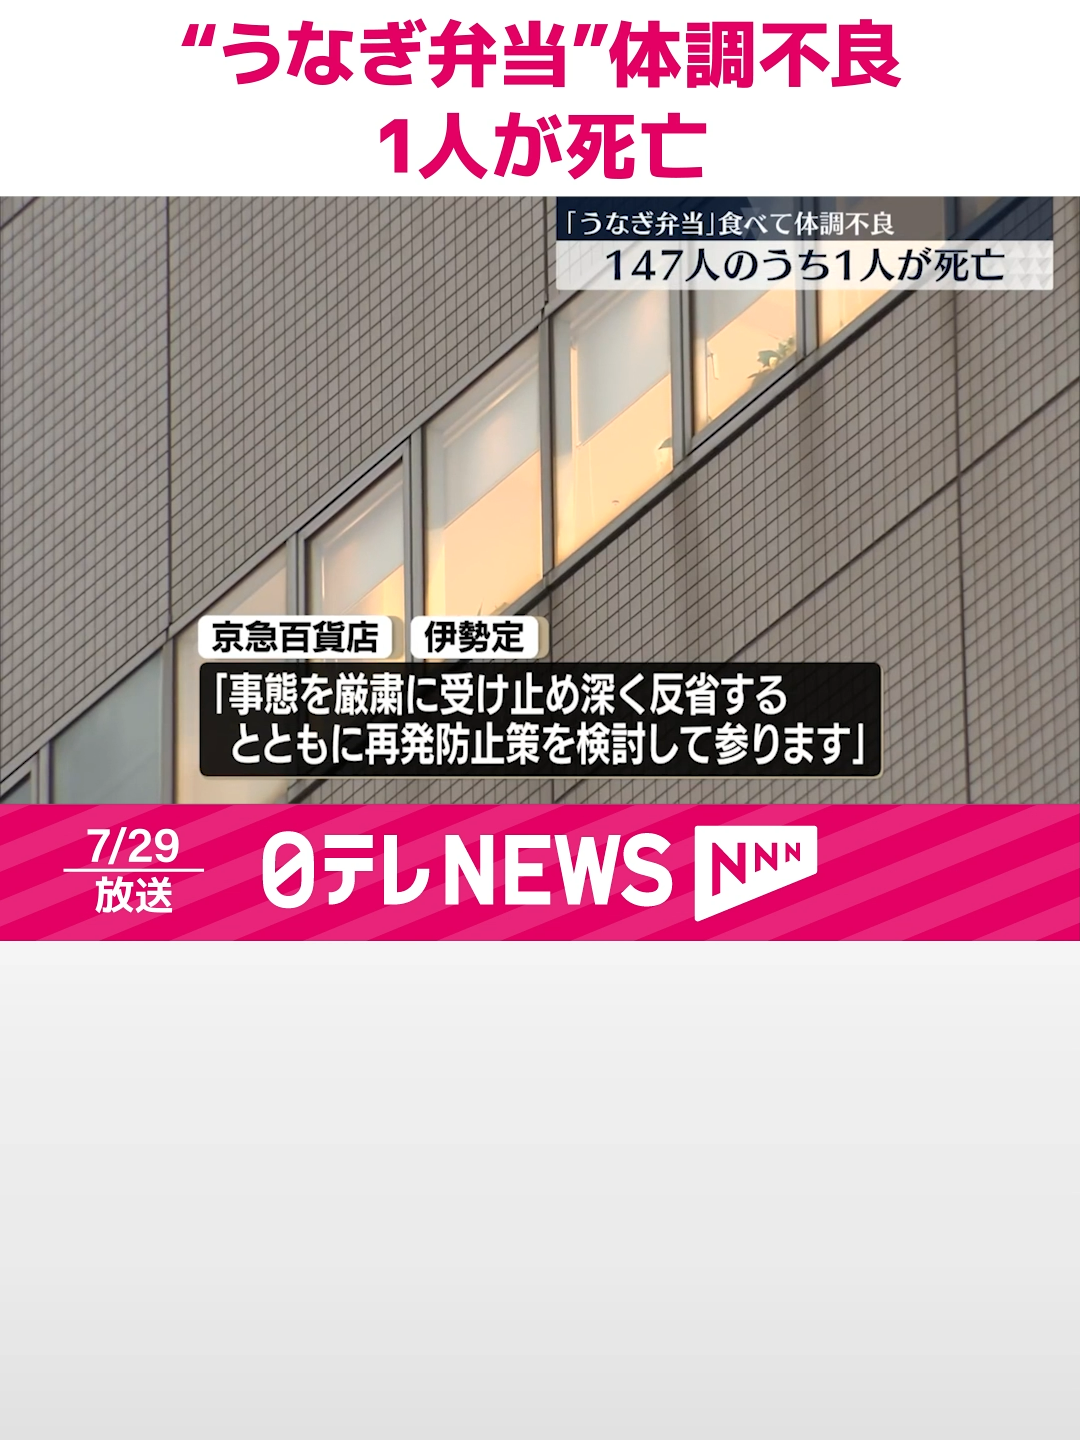 先週、横浜市の京急百貨店で「うなぎ弁当」などを食べた複数の客が体調不良を訴えた問題で、147人が嘔吐や下痢などの症状を訴え1人はその後、死亡したことが明らかになりました。#日テレnews #tiktokでニュース